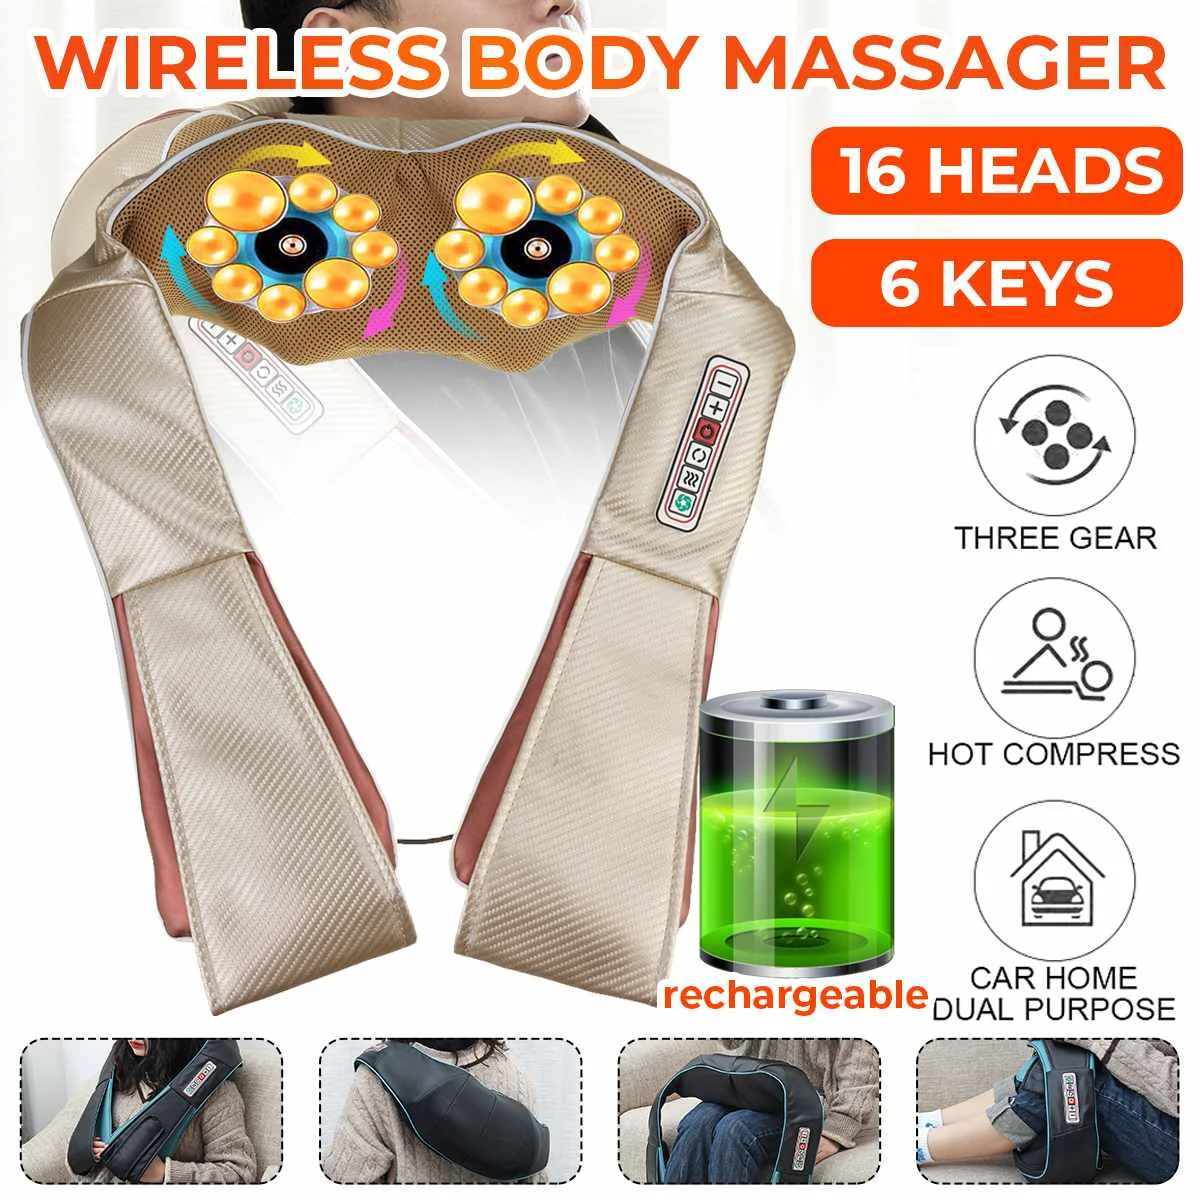 

U-образный Электрический Массажер шиацу для тела, плеч, шеи, шали, спины, инфракрасный обогрев, разминающий массаж для автомобиля/дома, забот...